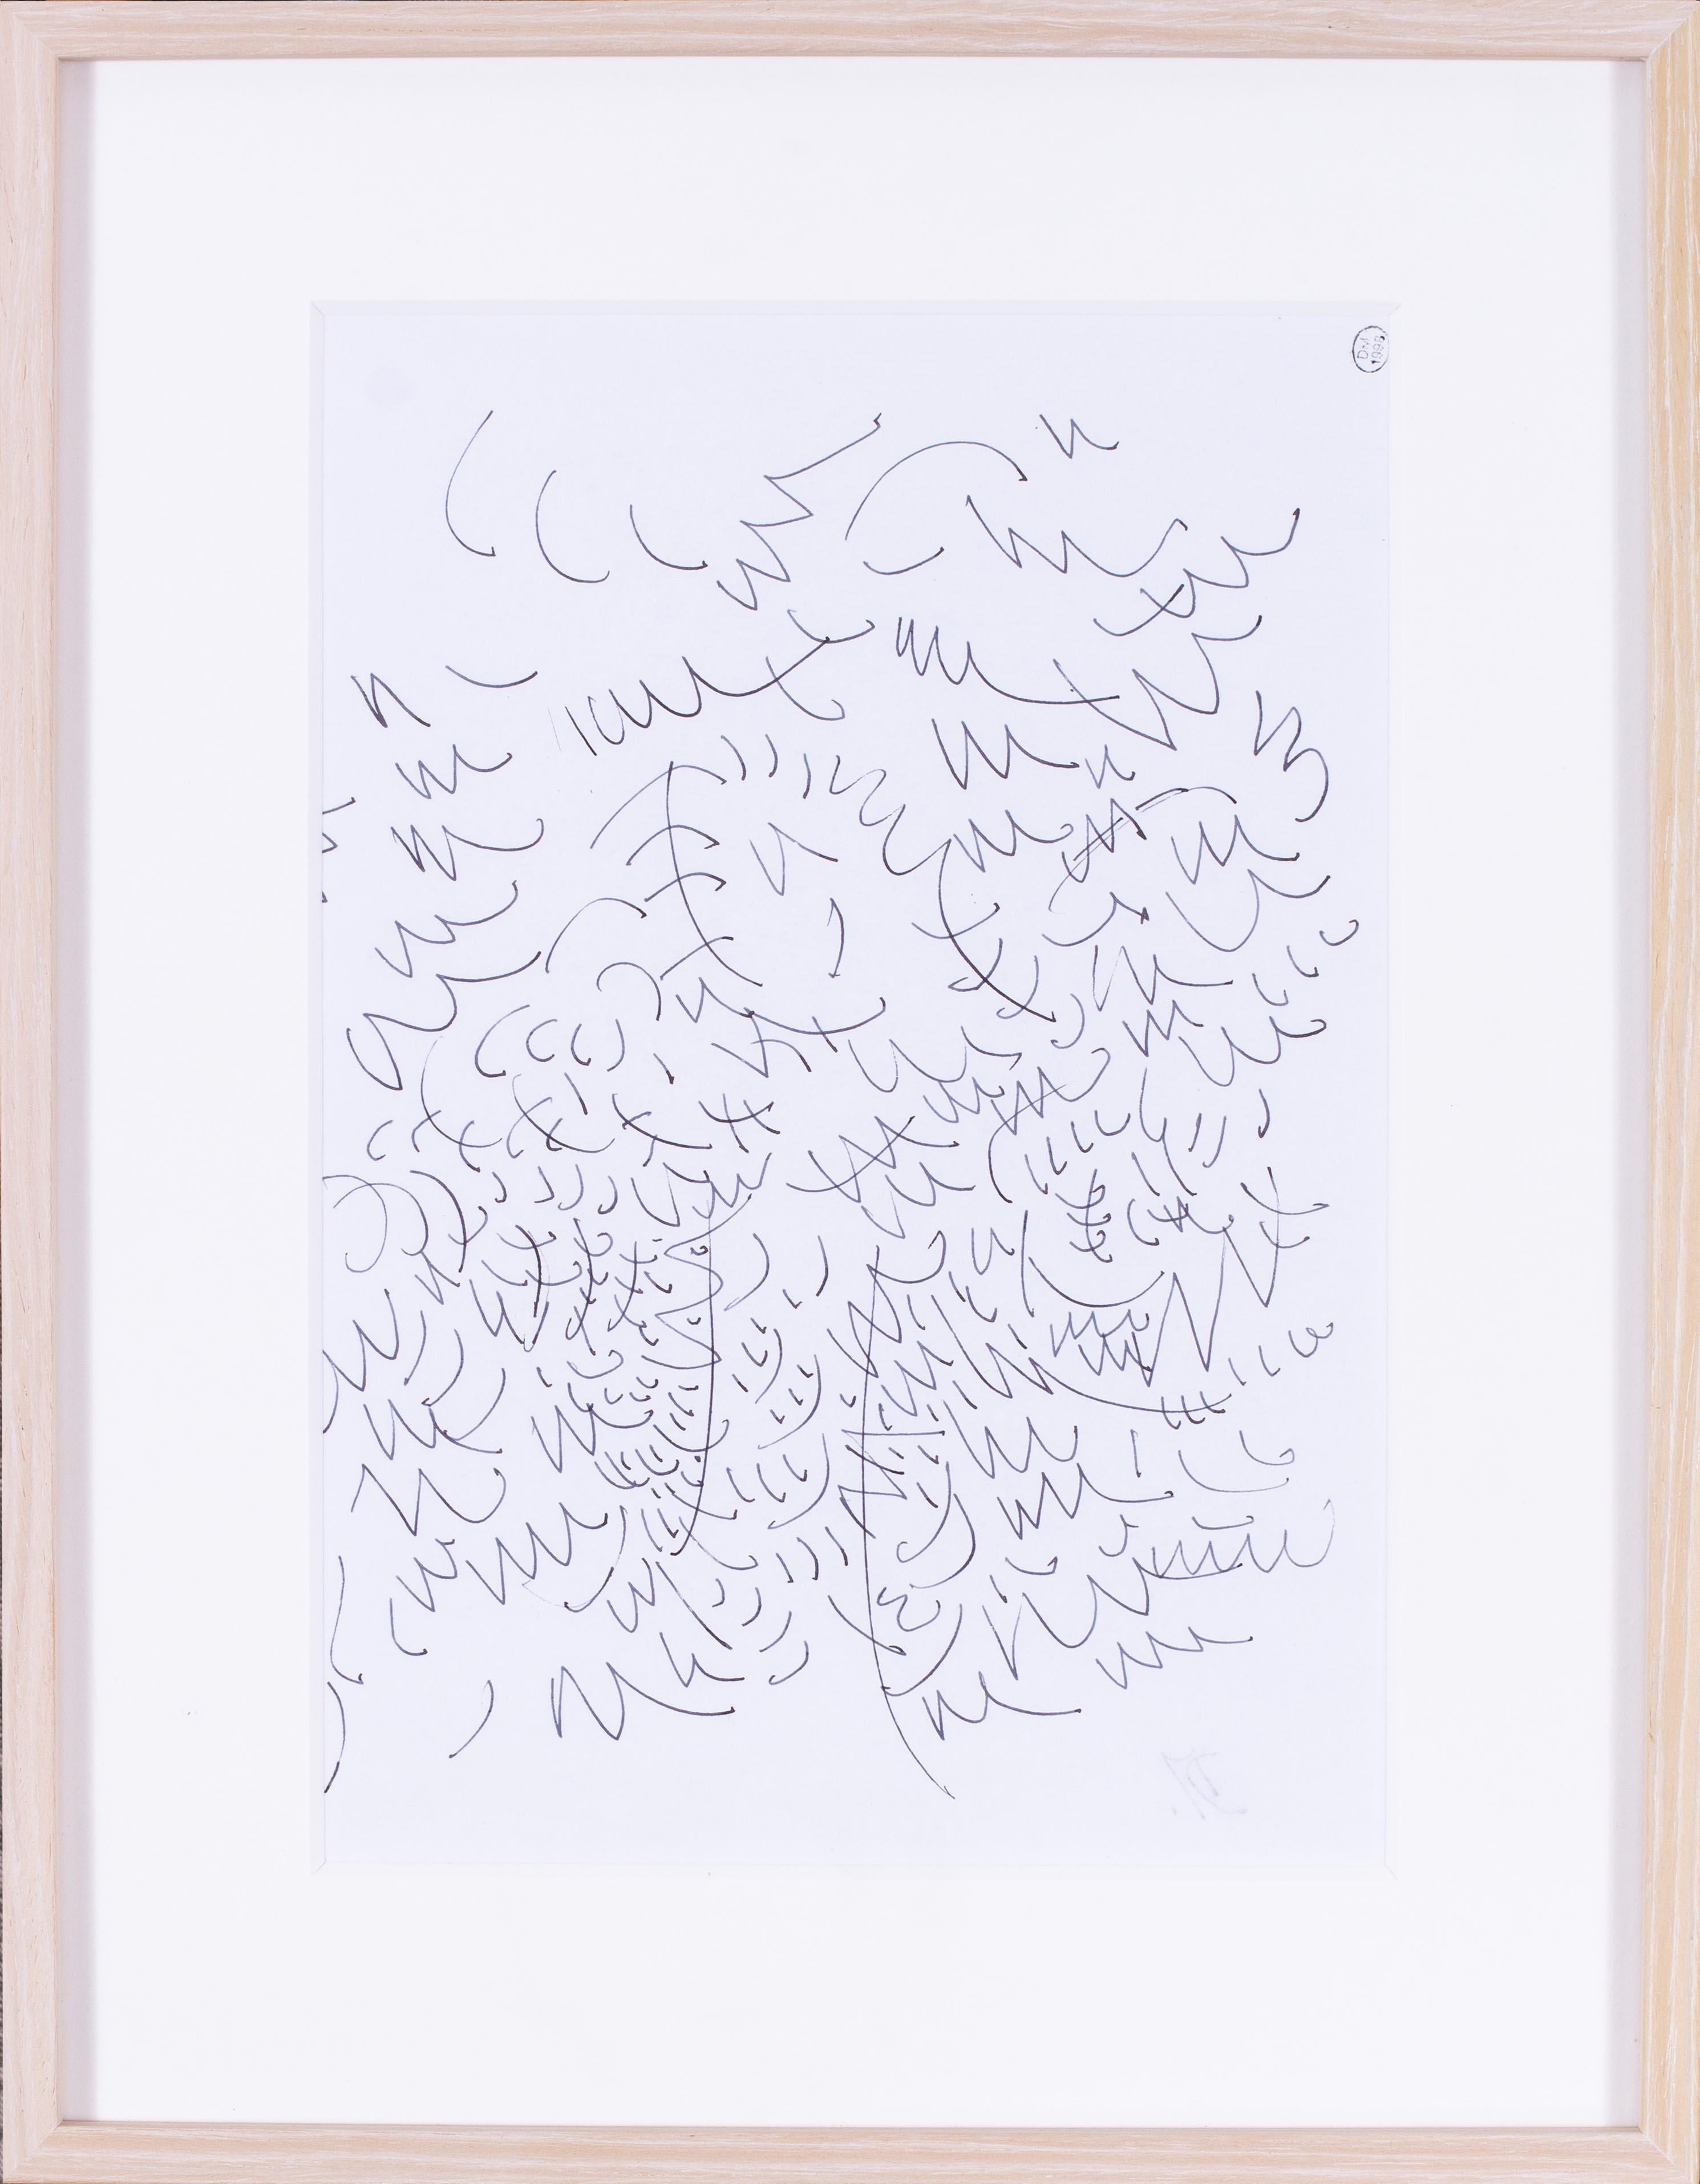 Il s'agit d'un beau dessin d'avant-garde d'un arbre réalisé par l'artiste française Dora Maar.  Dora Maar était une artiste à part entière, marquée par des photographies saisissantes, des techniques innovantes et une exploration inébranlable des